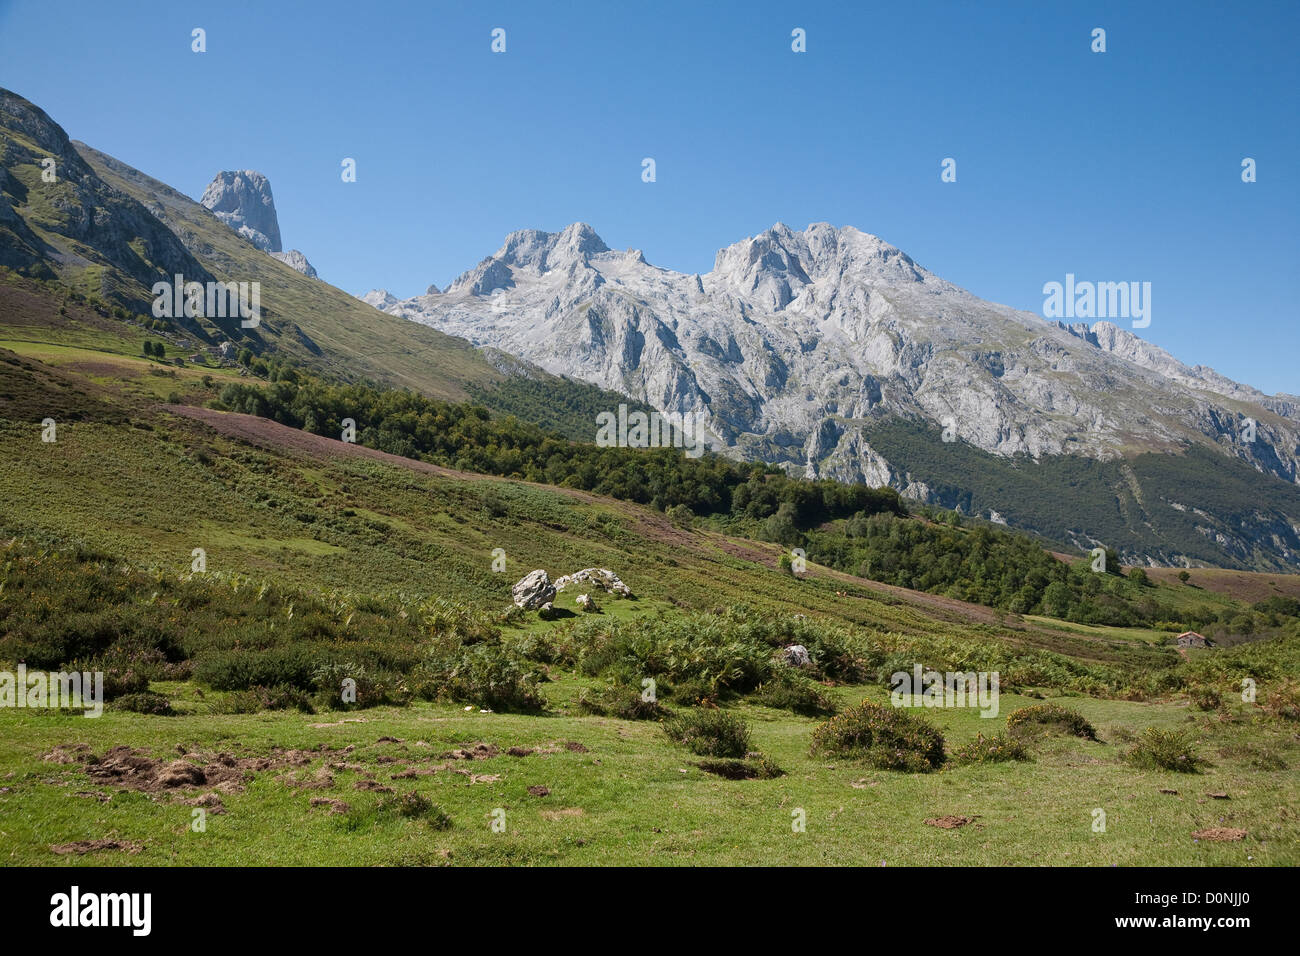 Paysage pastoral, Vega de las Cuerres - Parc National Picos de Europa, la cordillère Cantabrique, les Asturies, Espagne Banque D'Images